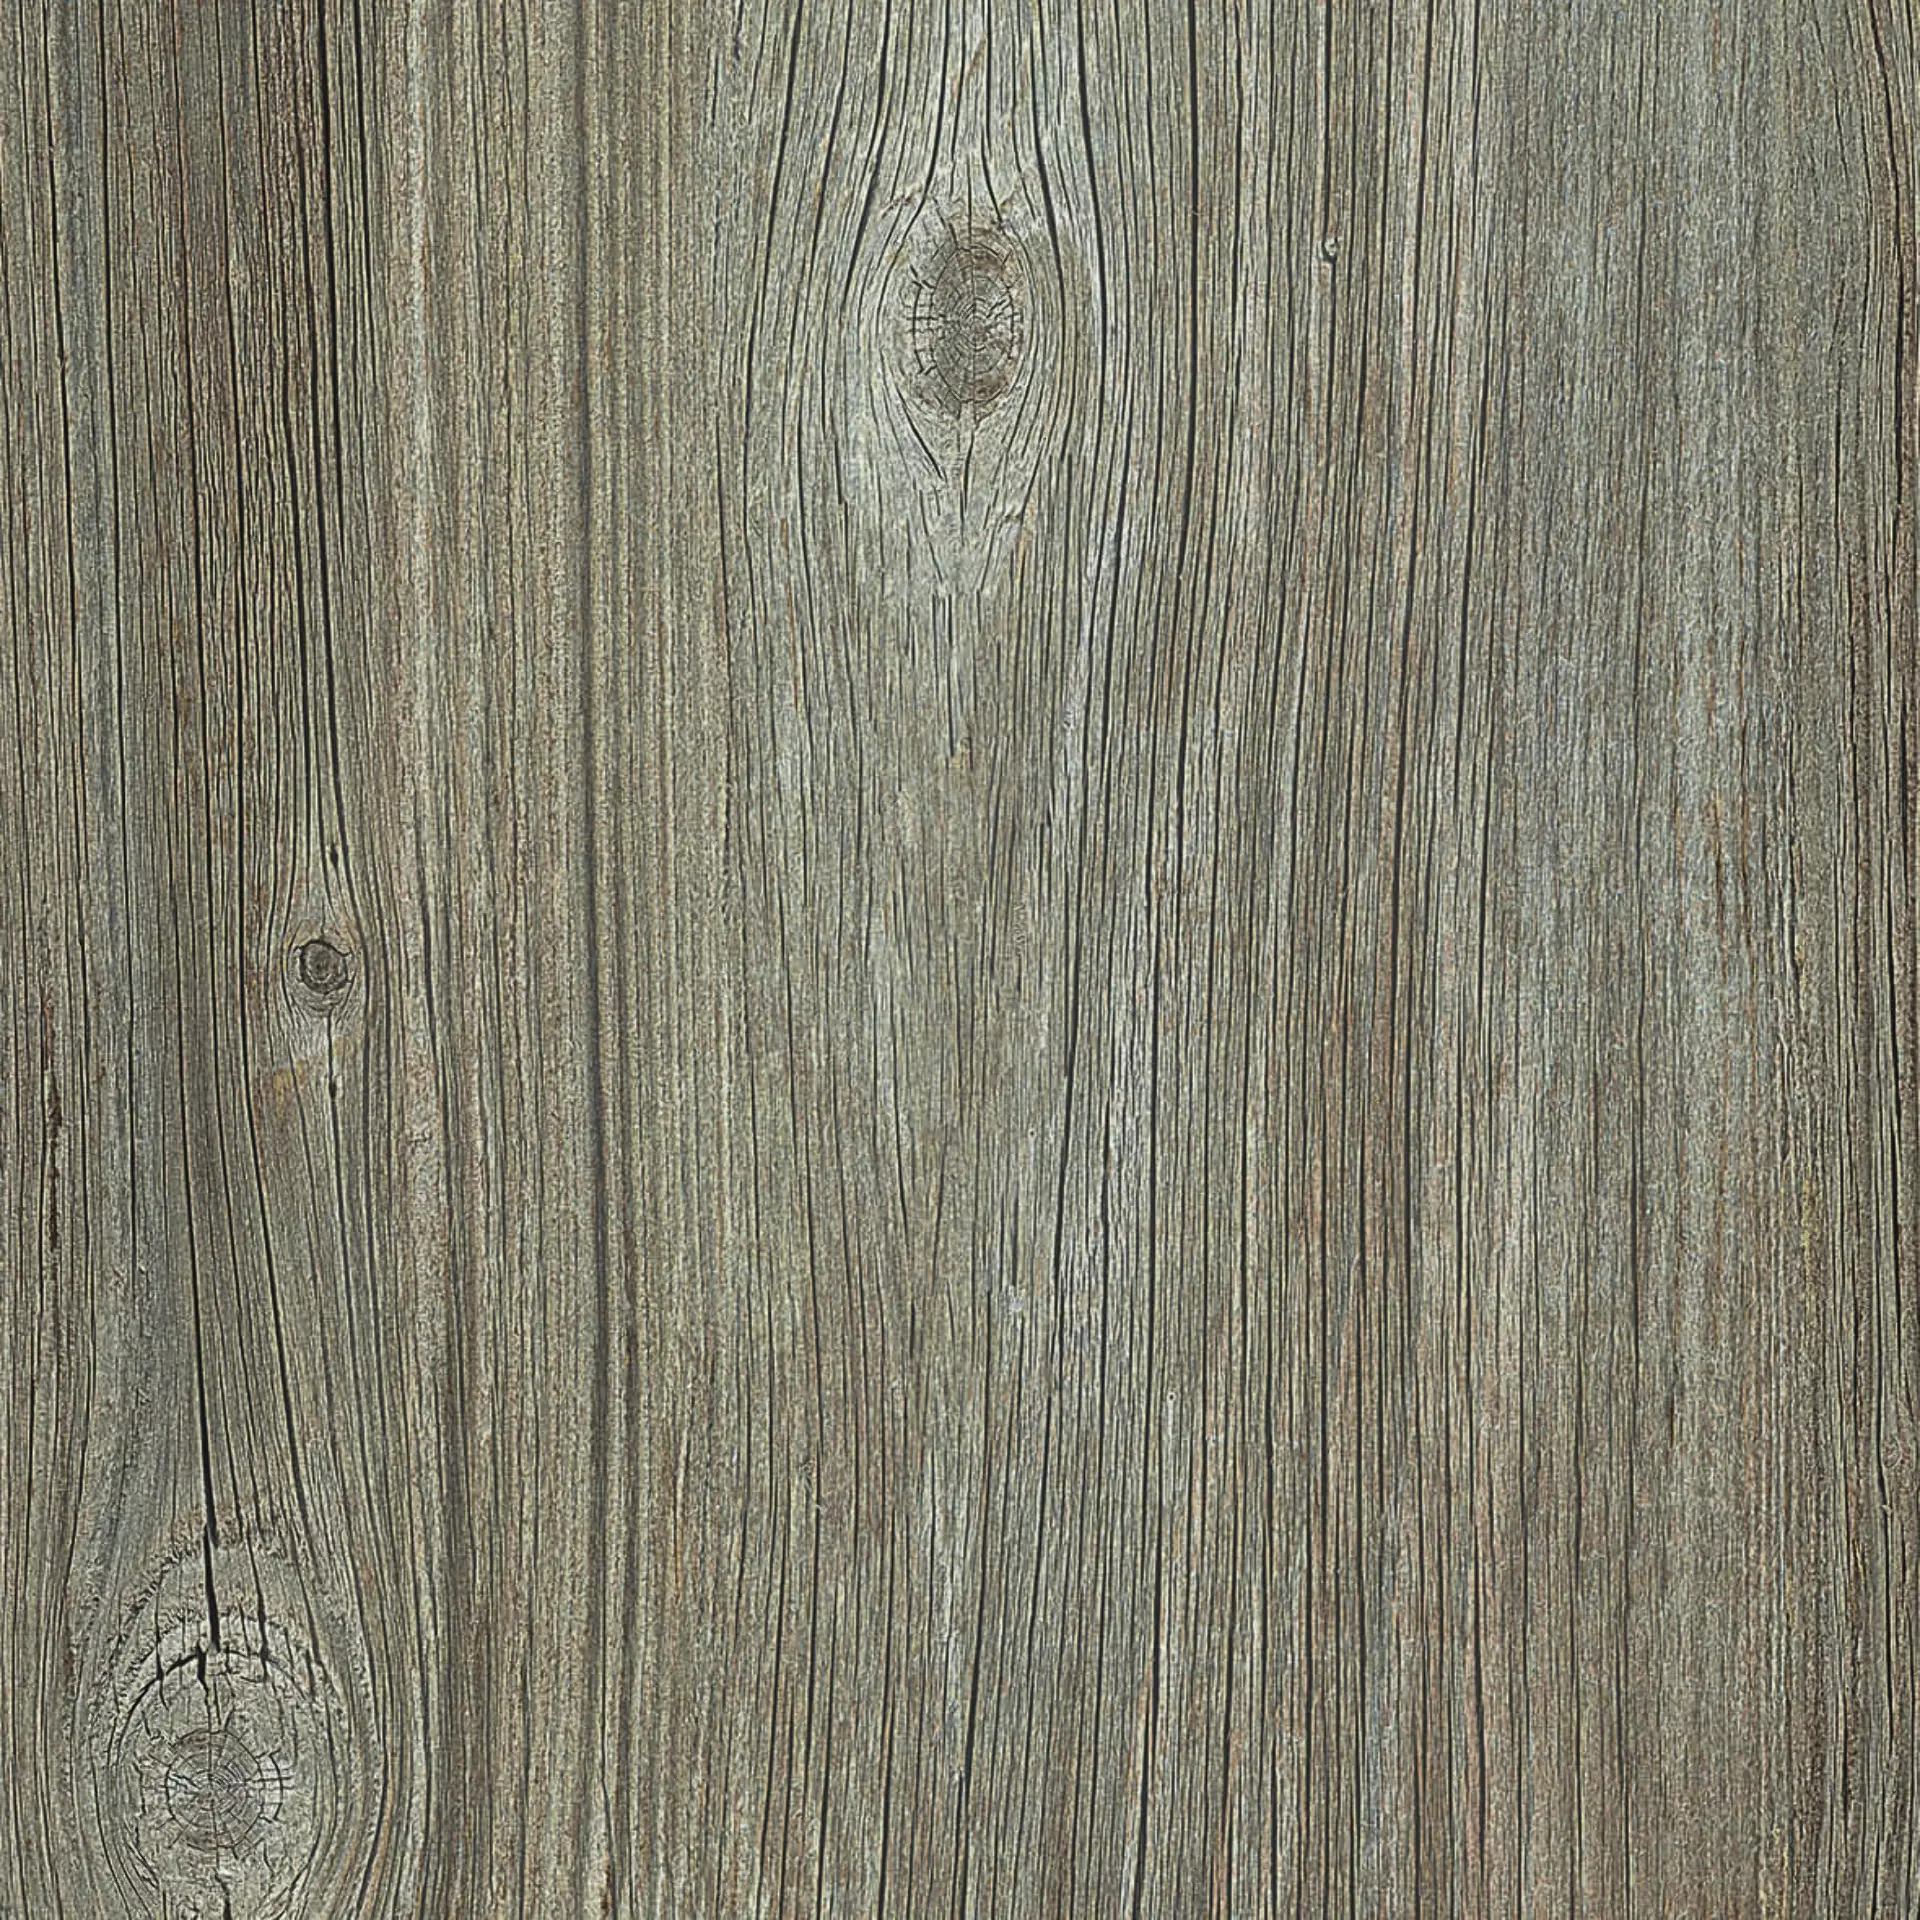 Casalgrande Country Wood Greige Naturale – Matt 10460264 60x120cm rectified 9mm